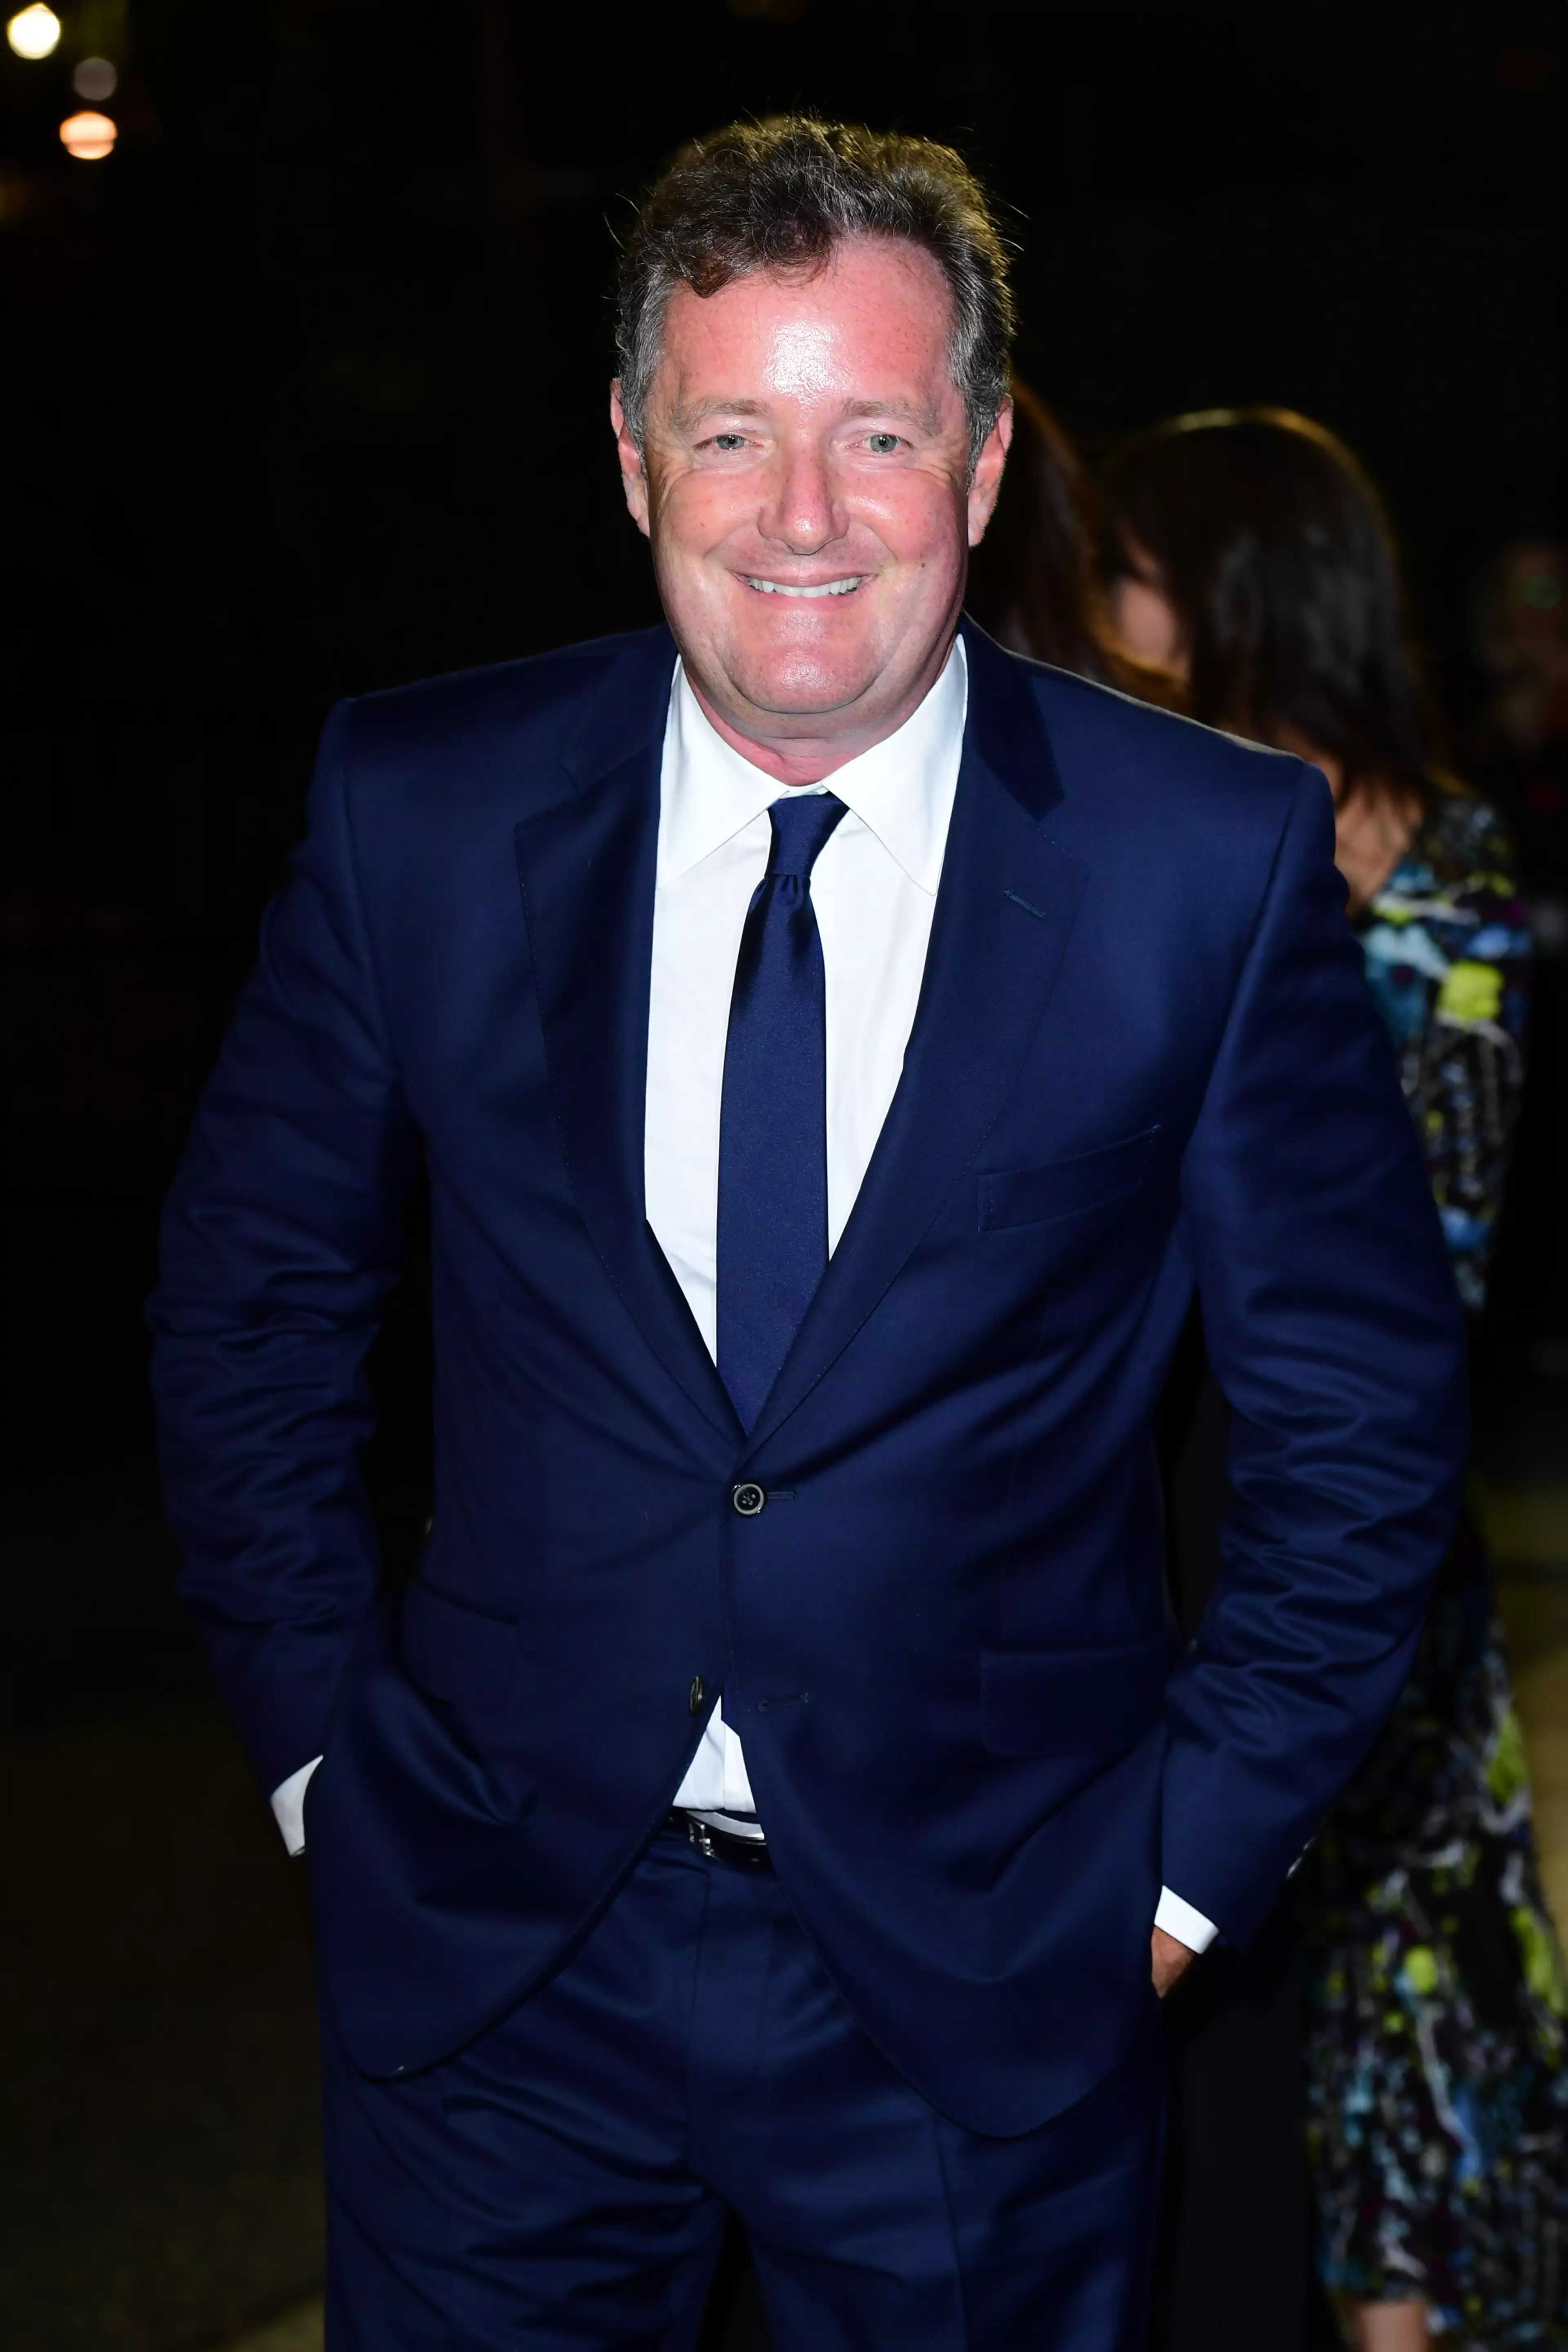 Piers Morgan branded the snap 'creepy'.